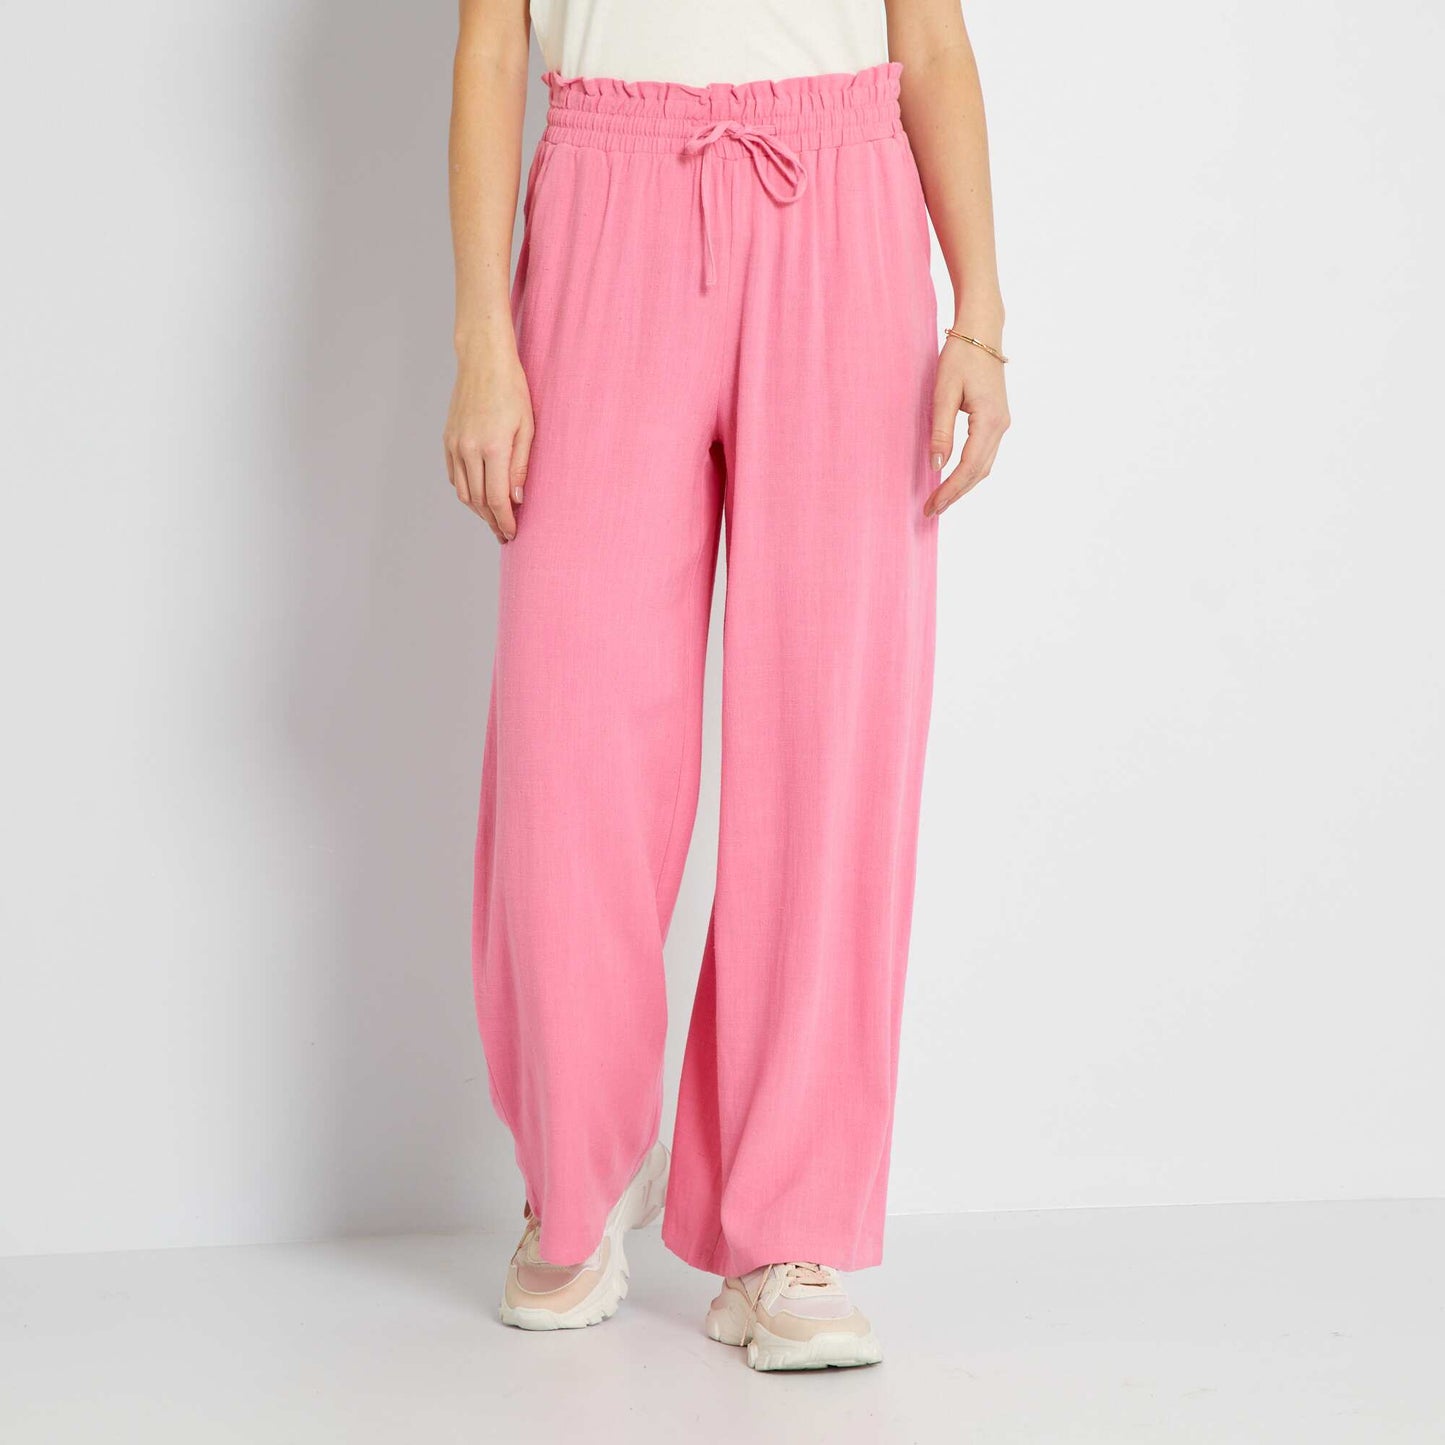 Pantalon droit avec lin rose